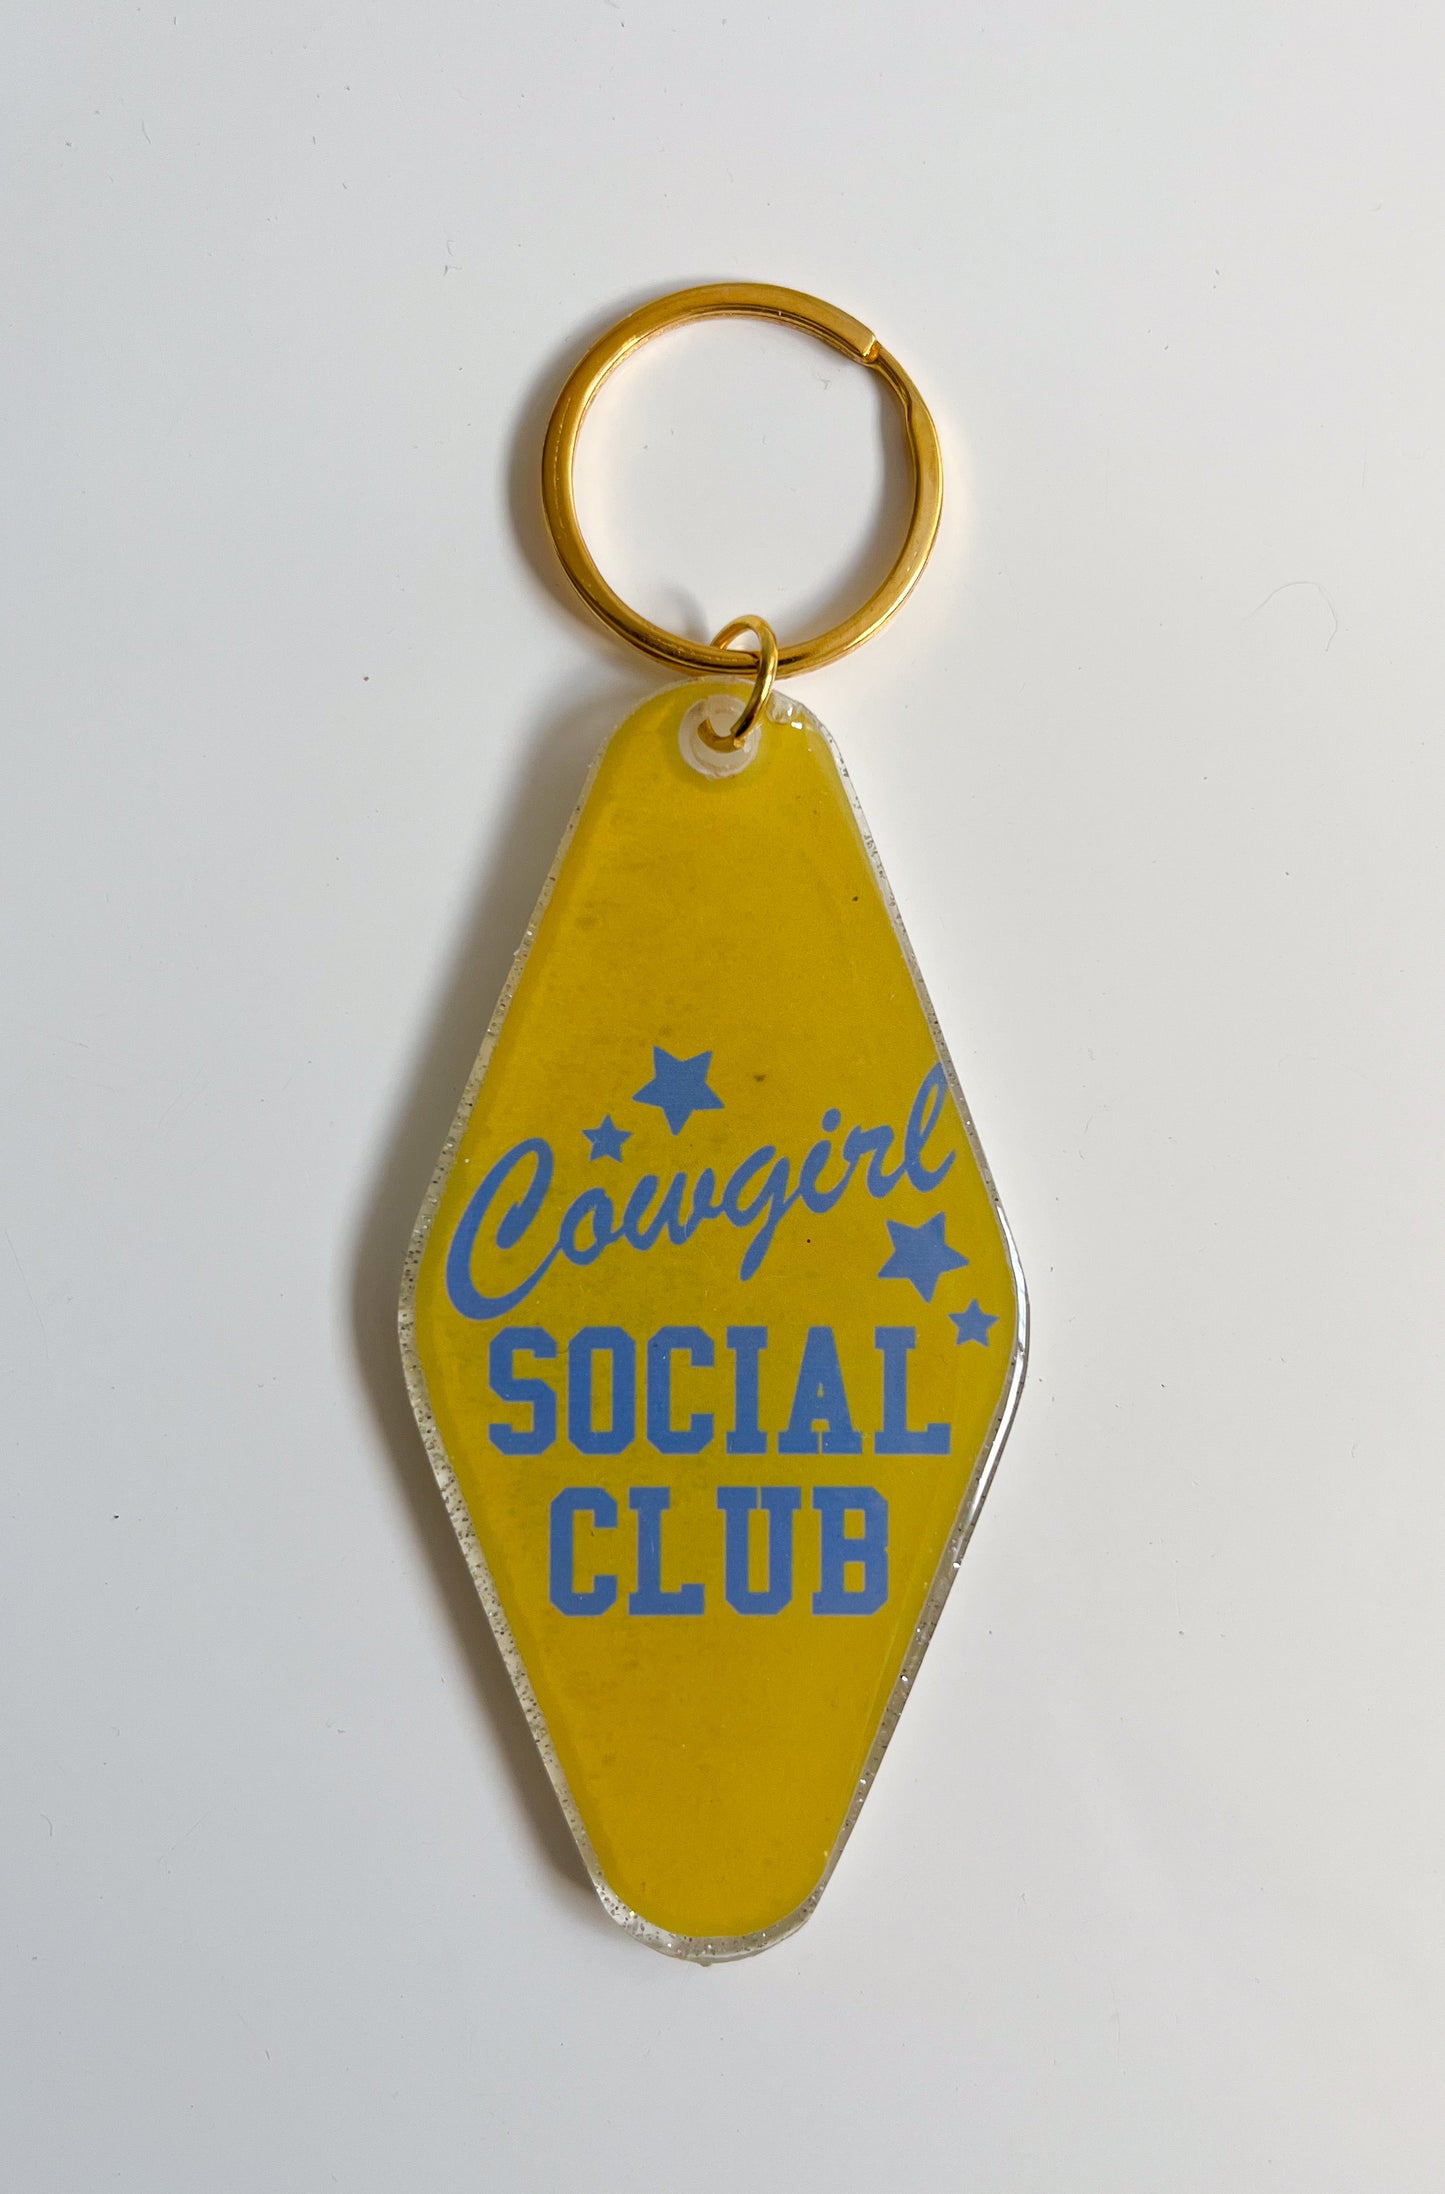 Cowgirl Social Club - Hotel Keychain